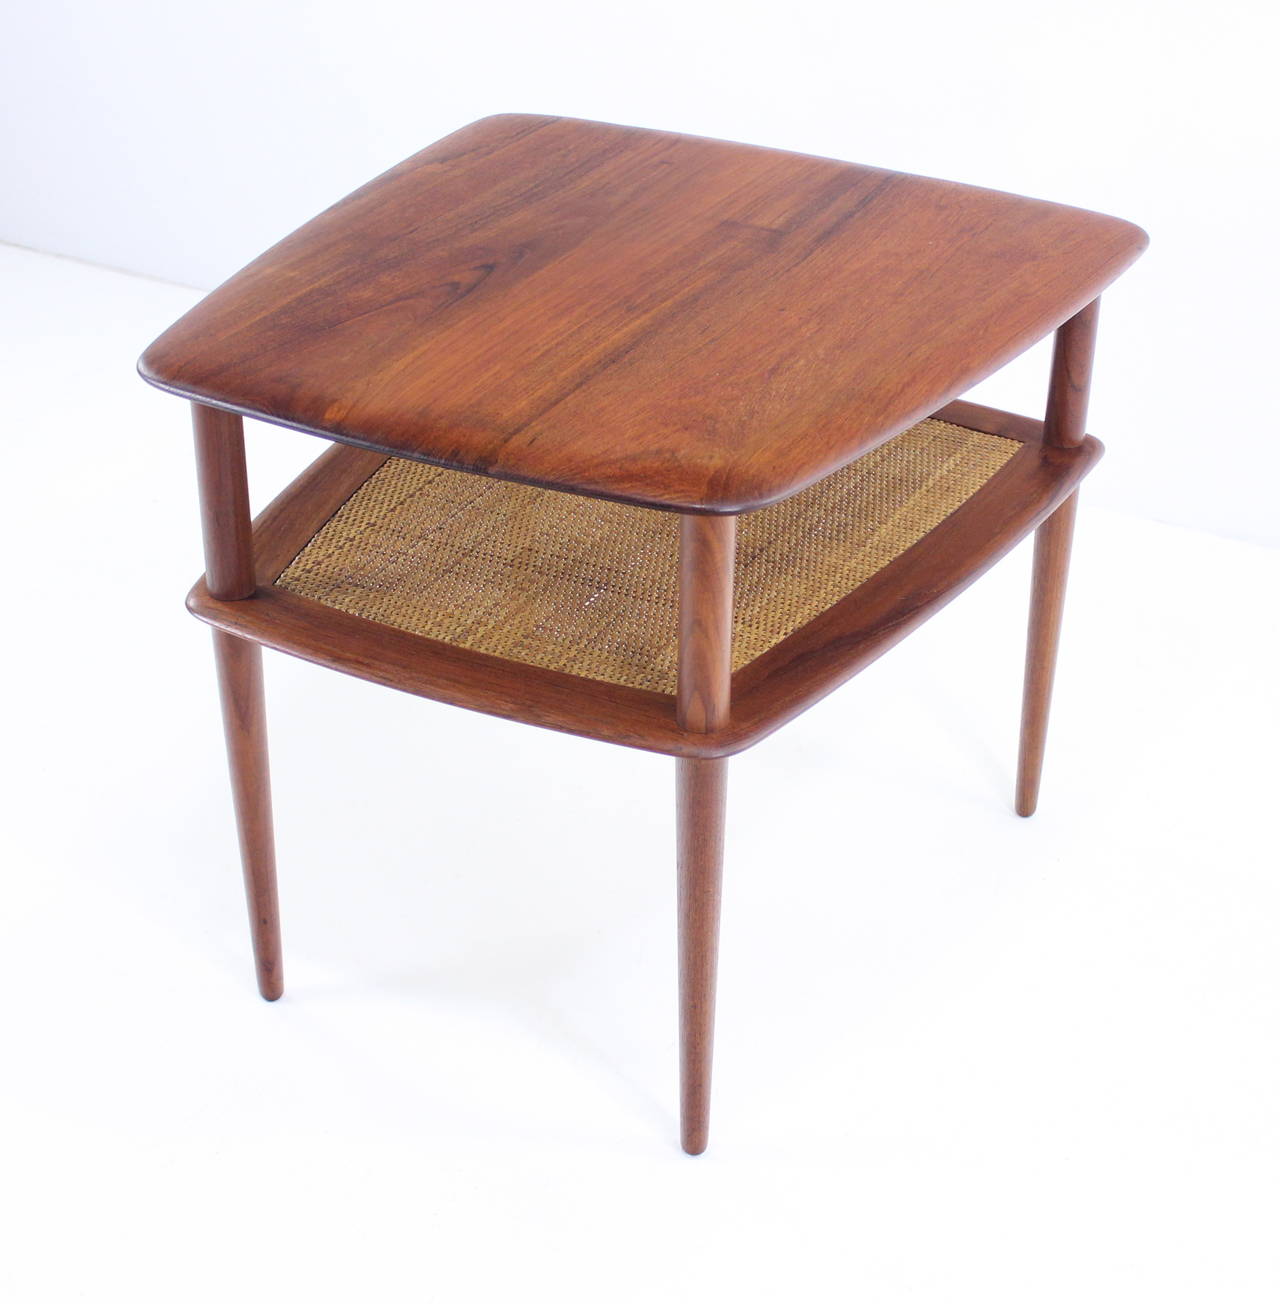 20th Century Danish Modern Solid Teak End or Side Table Designed by Peter Hvidt For Sale